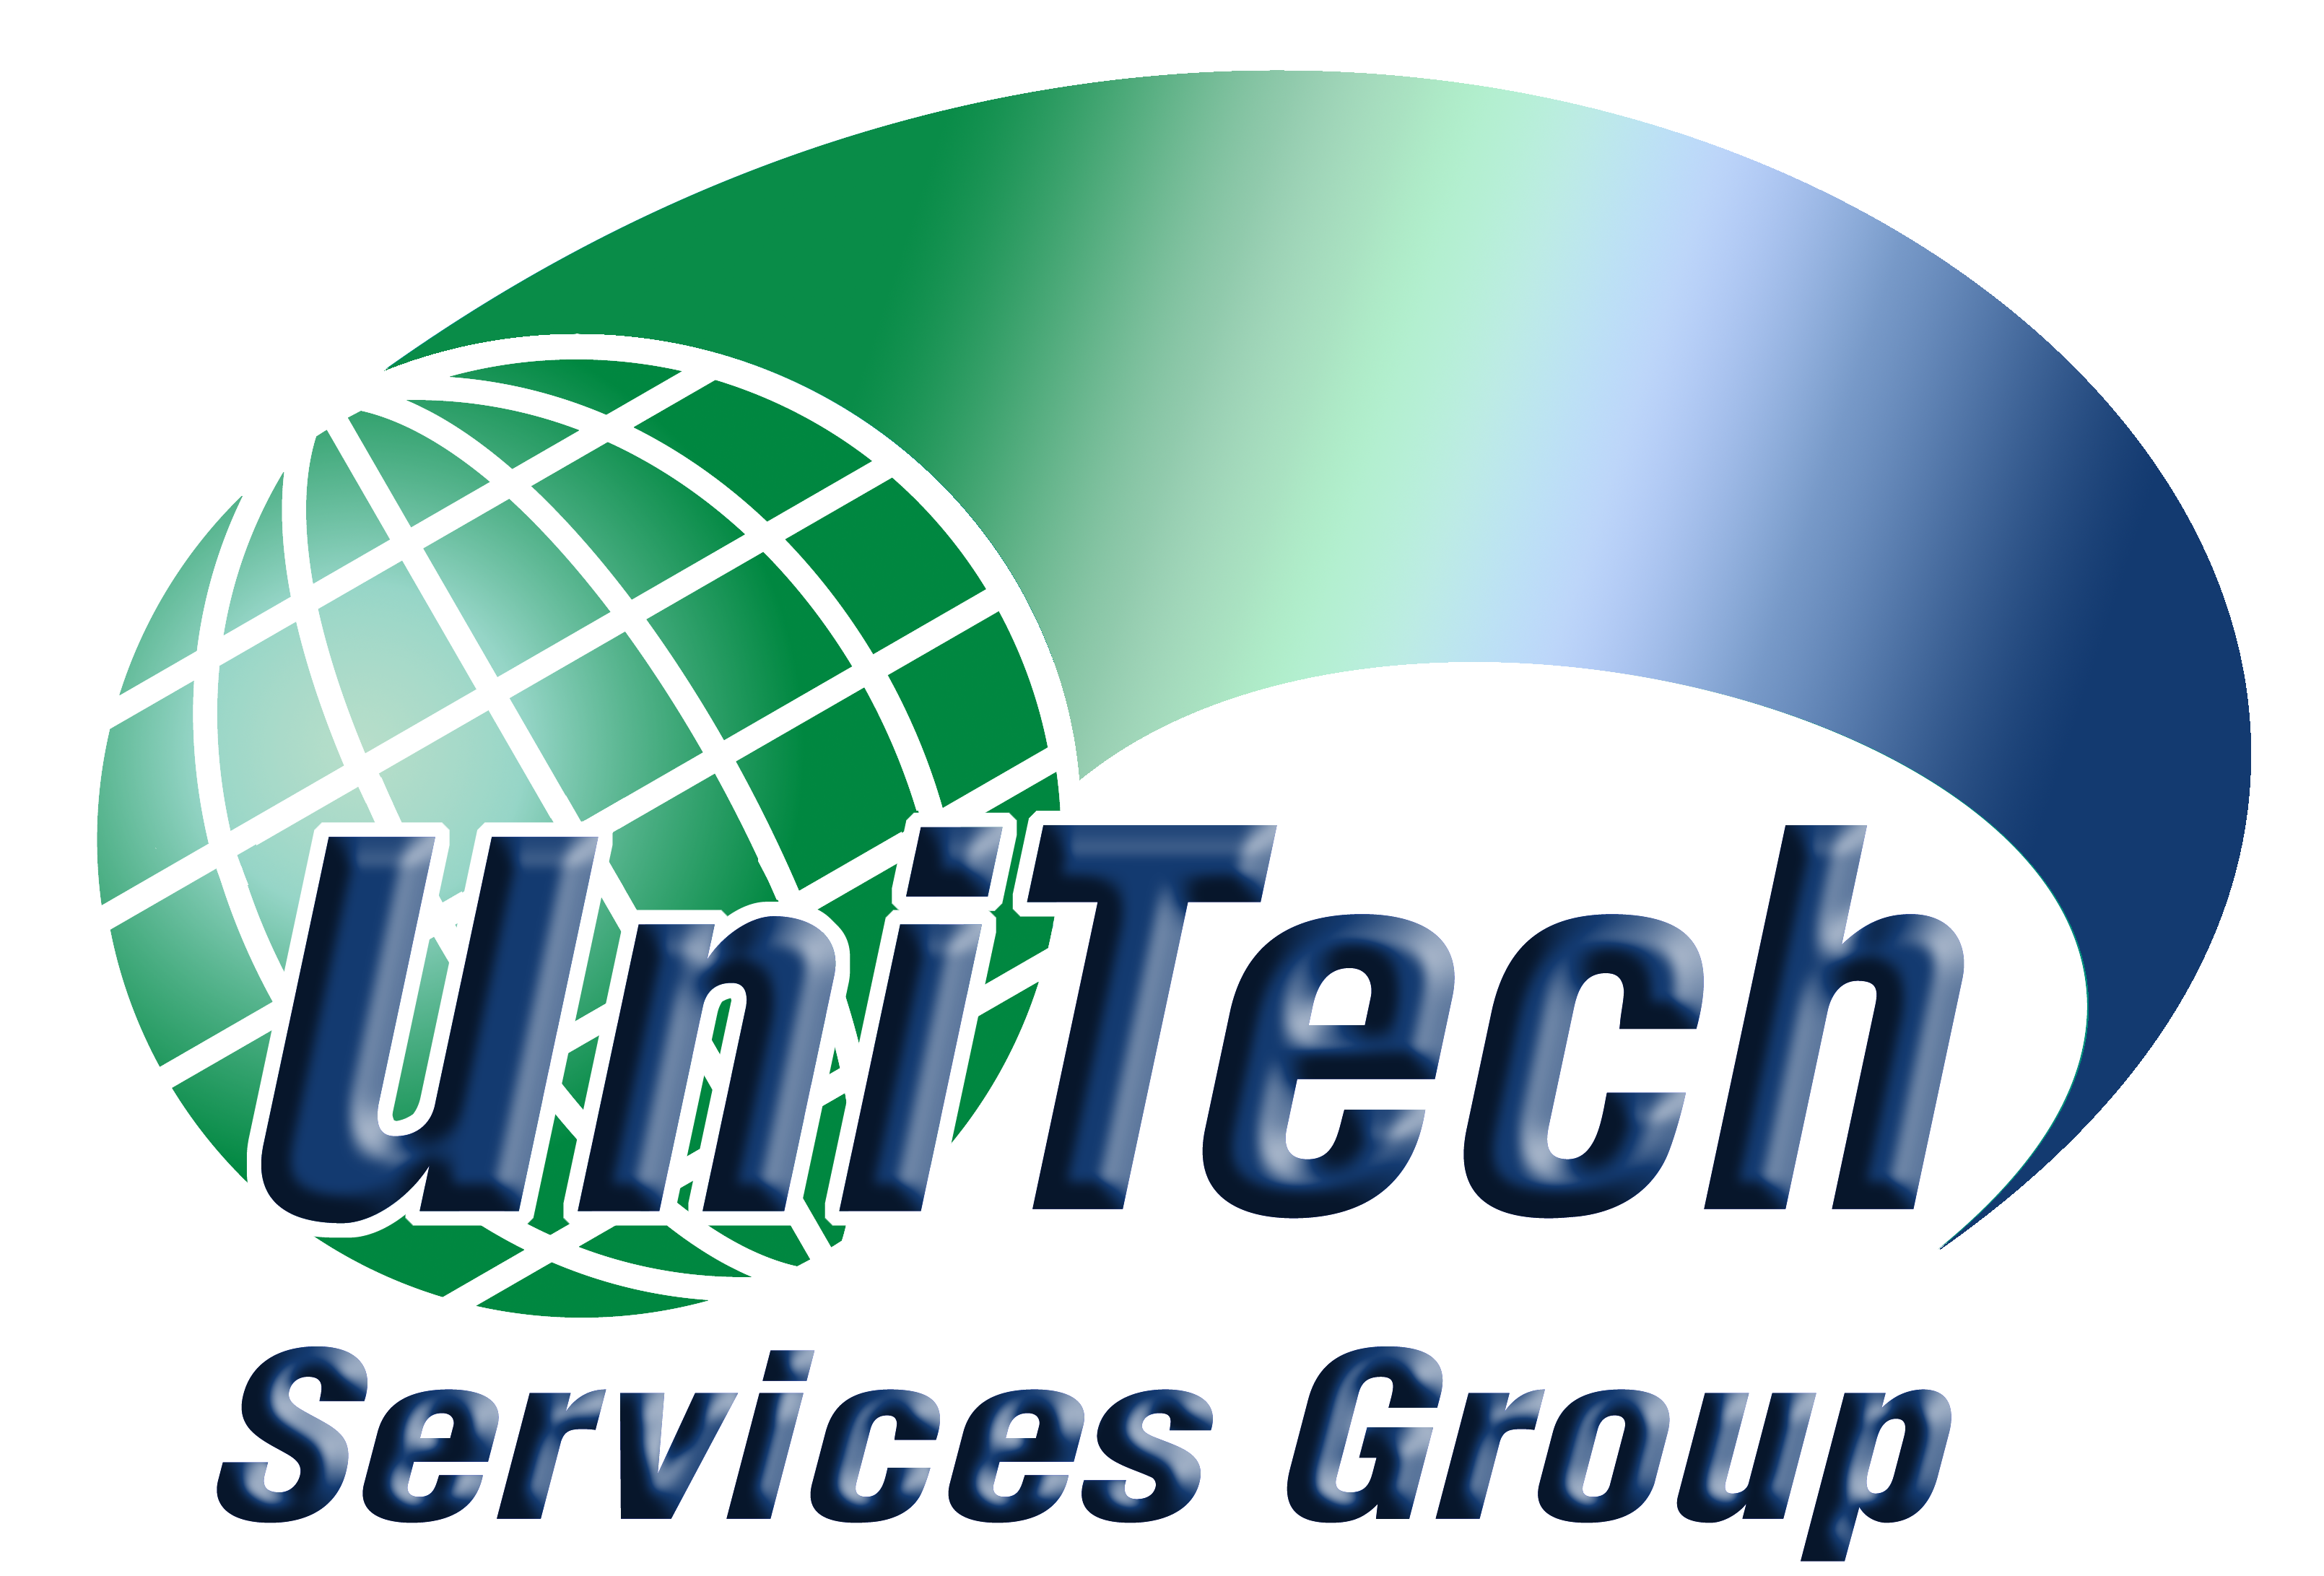 UniTech Services Group, Inc.